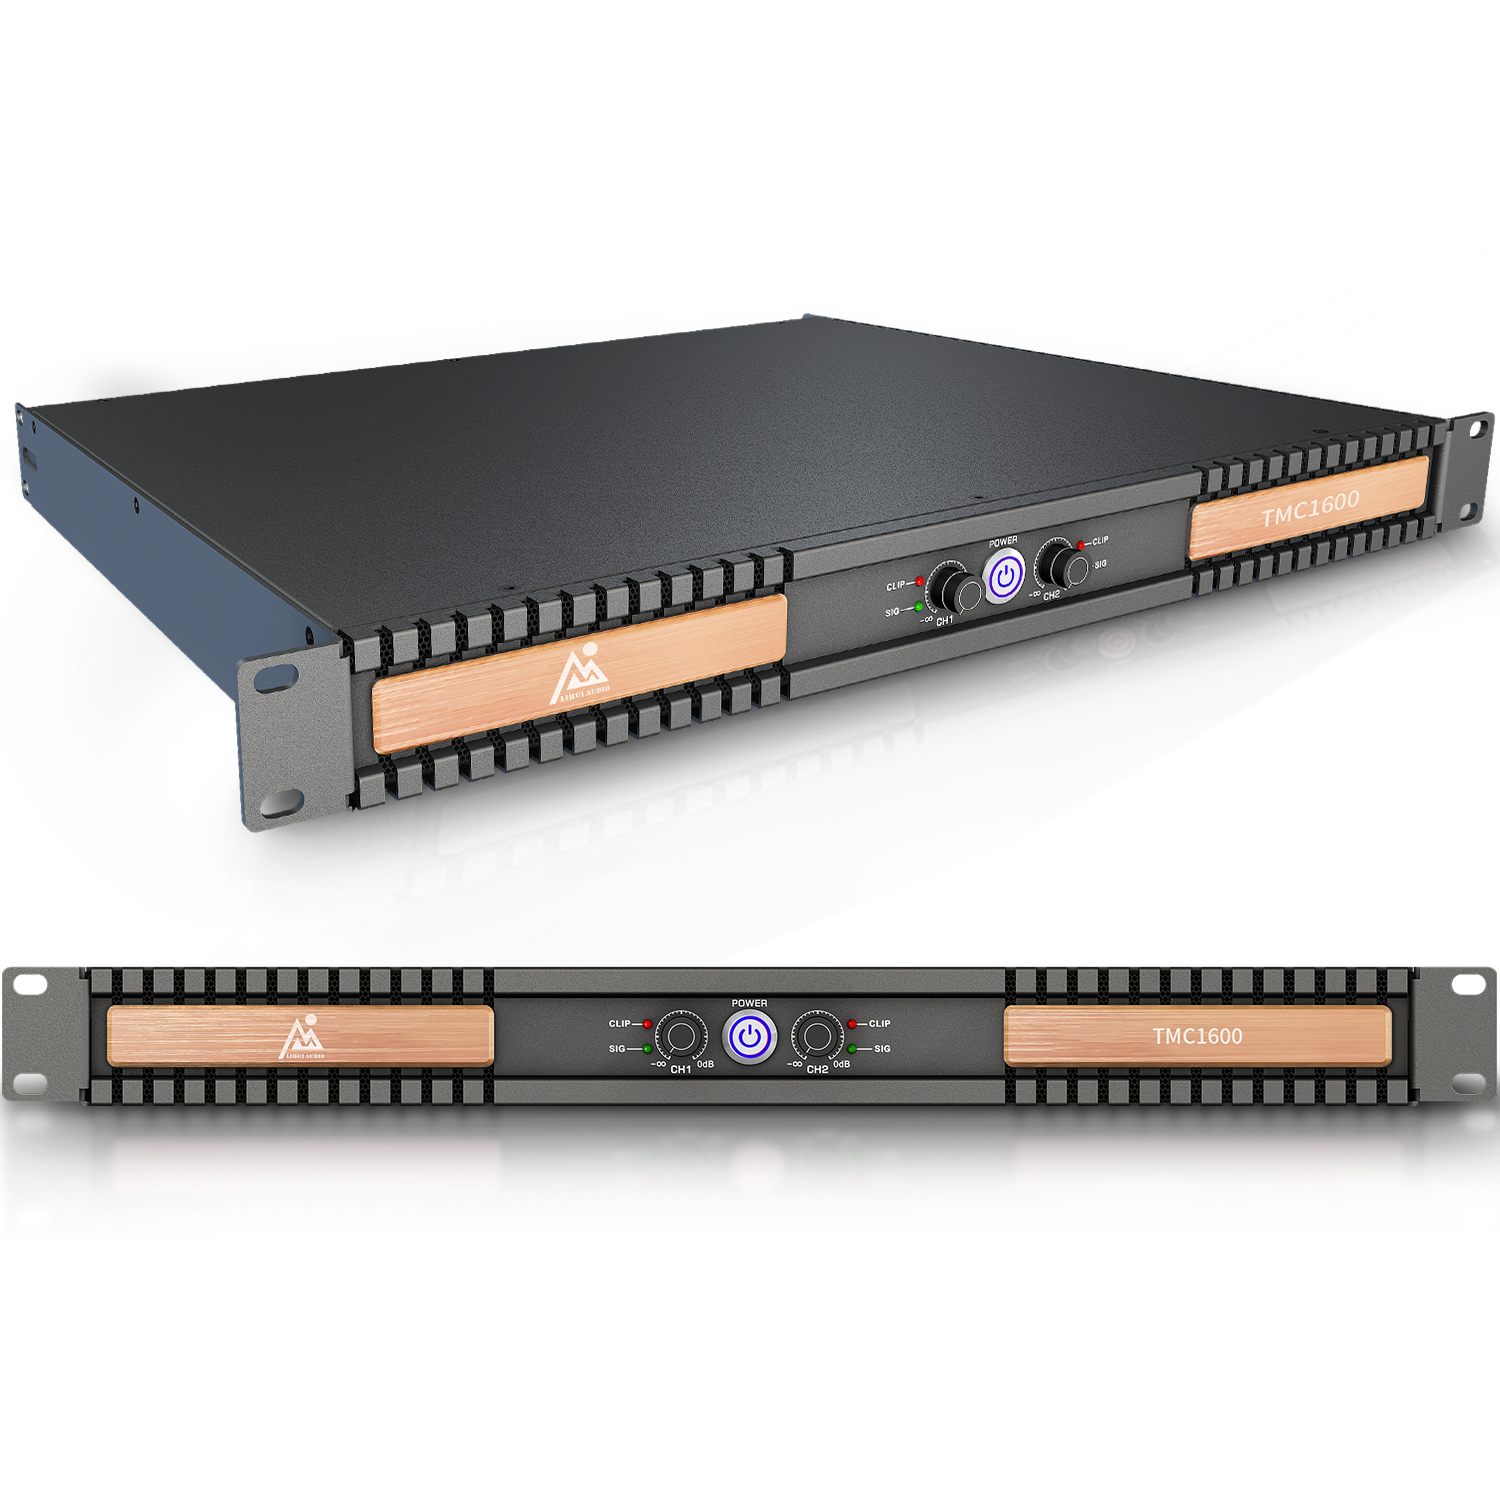 टीएमसी1600 आयरन ब्लैक 2 चैनल 1600w पा साउंड सिस्टम के लिए 110V~240V वोल्टेज सबवूफर एम्पलीफायर का समर्थन करता है 